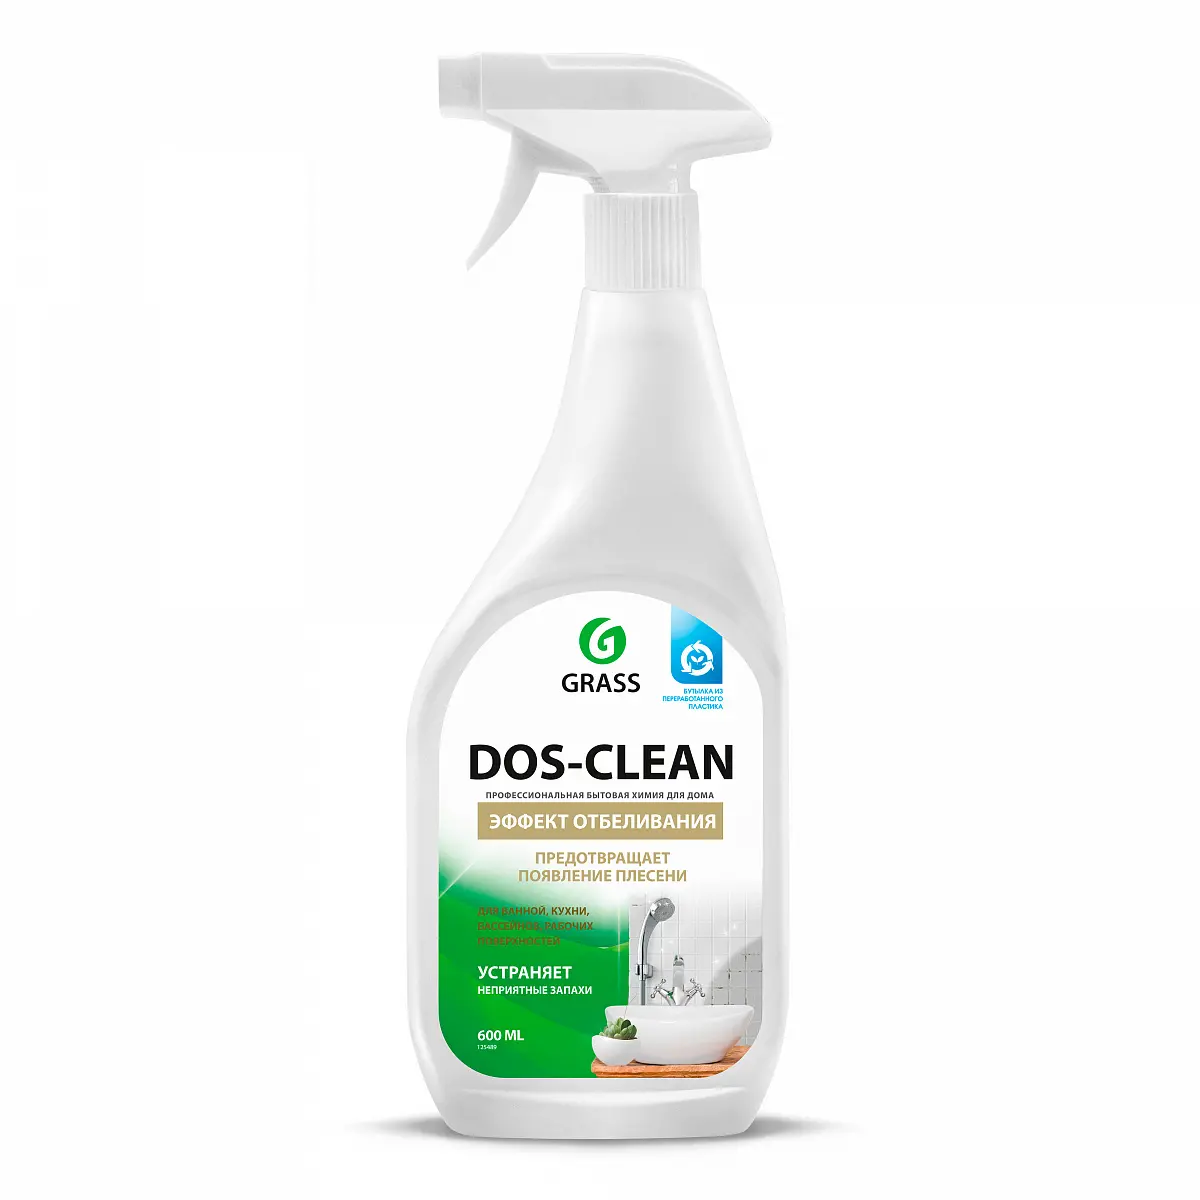 Универсальное чистящее средство Dos-clean 600 мл. тригер Grass